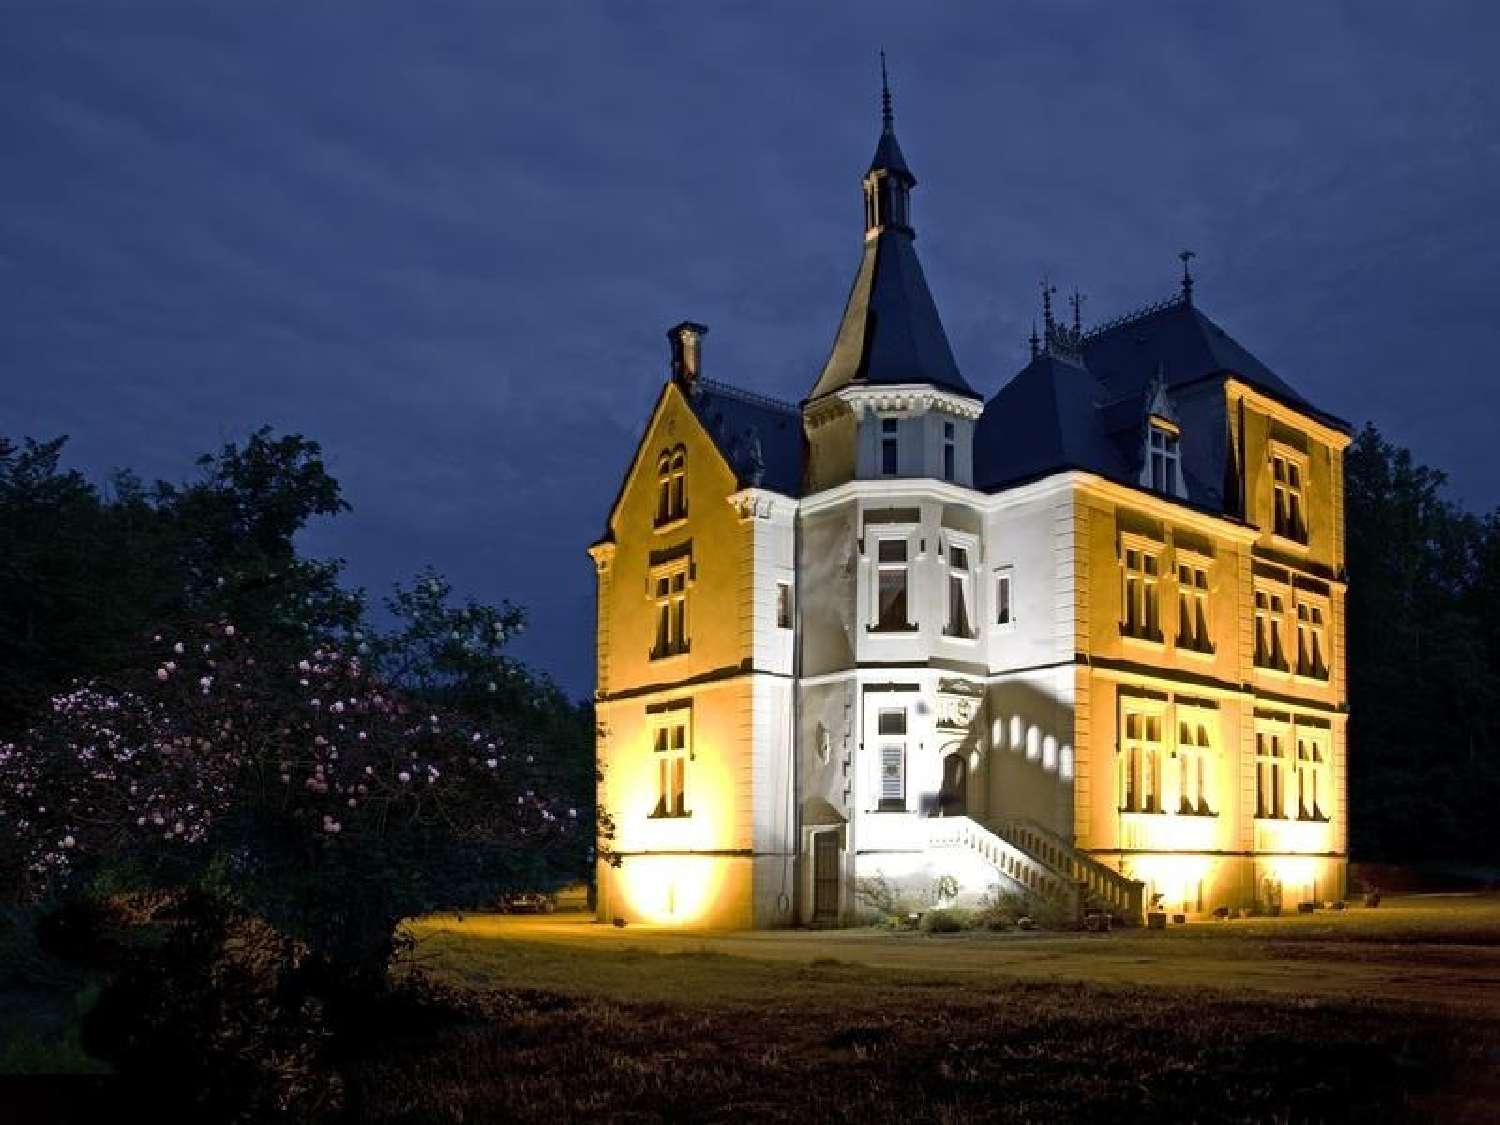  à vendre château Tours Indre-et-Loire 3